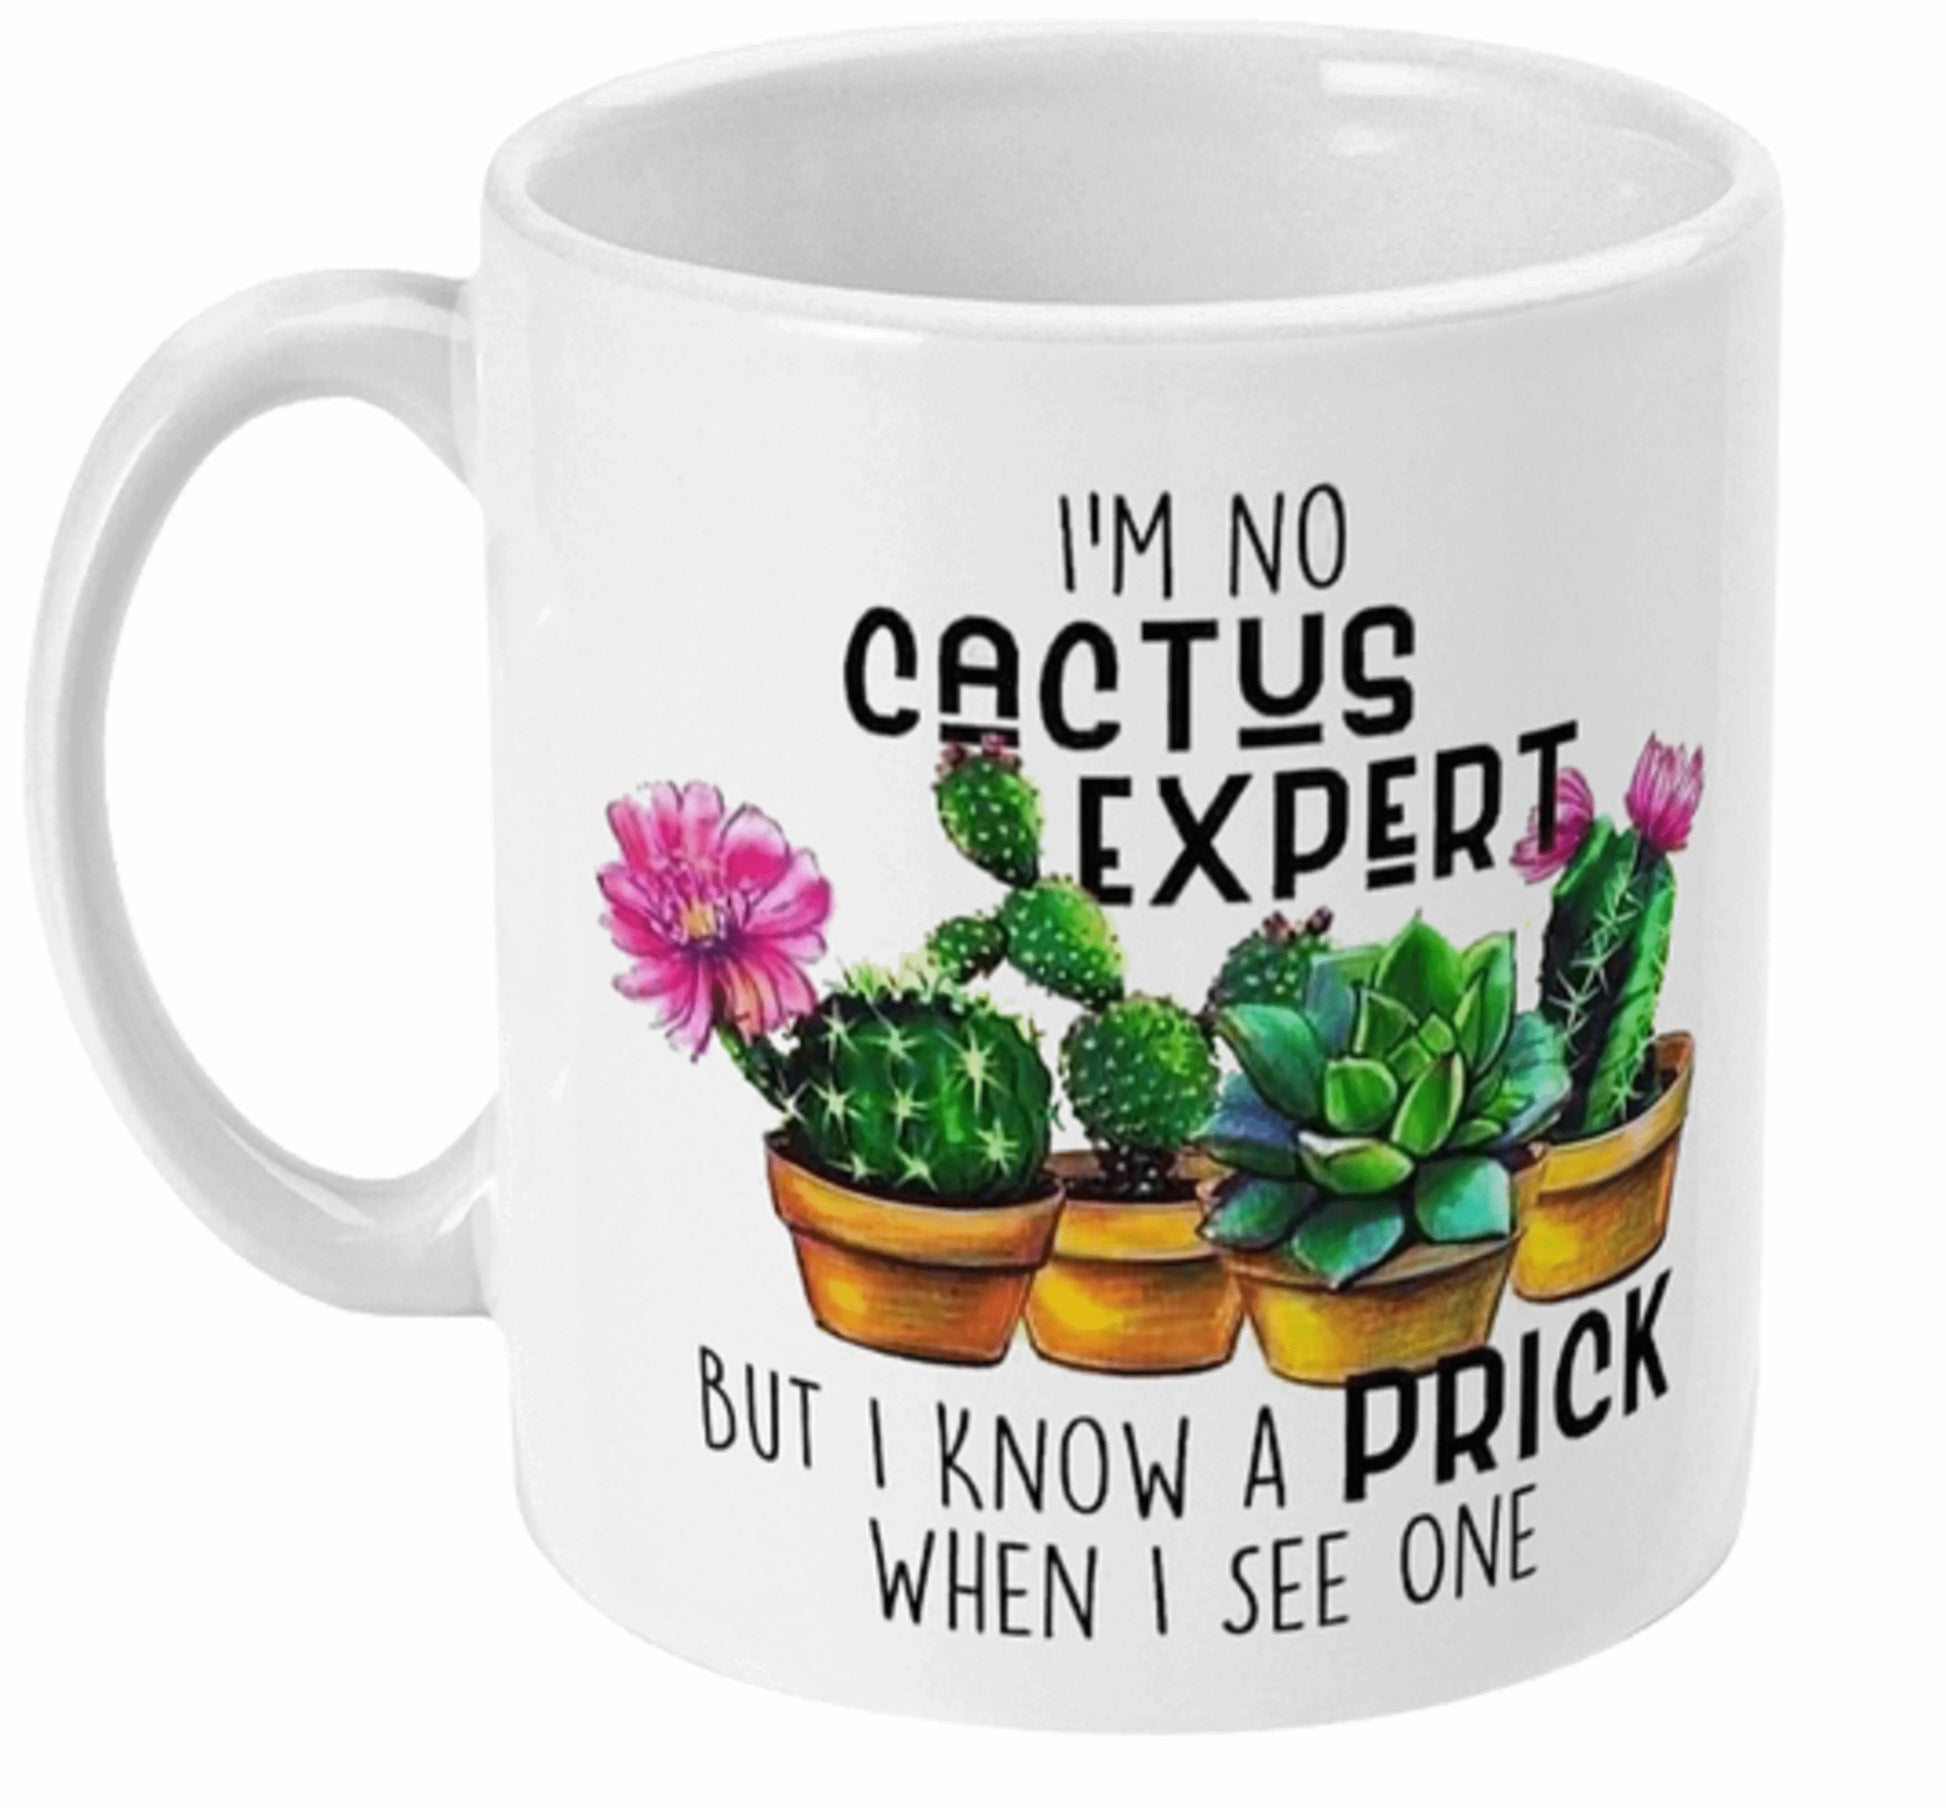  Adult I'm No Cactus Expert Funny Mug by Free Spirit Accessories sold by Free Spirit Accessories